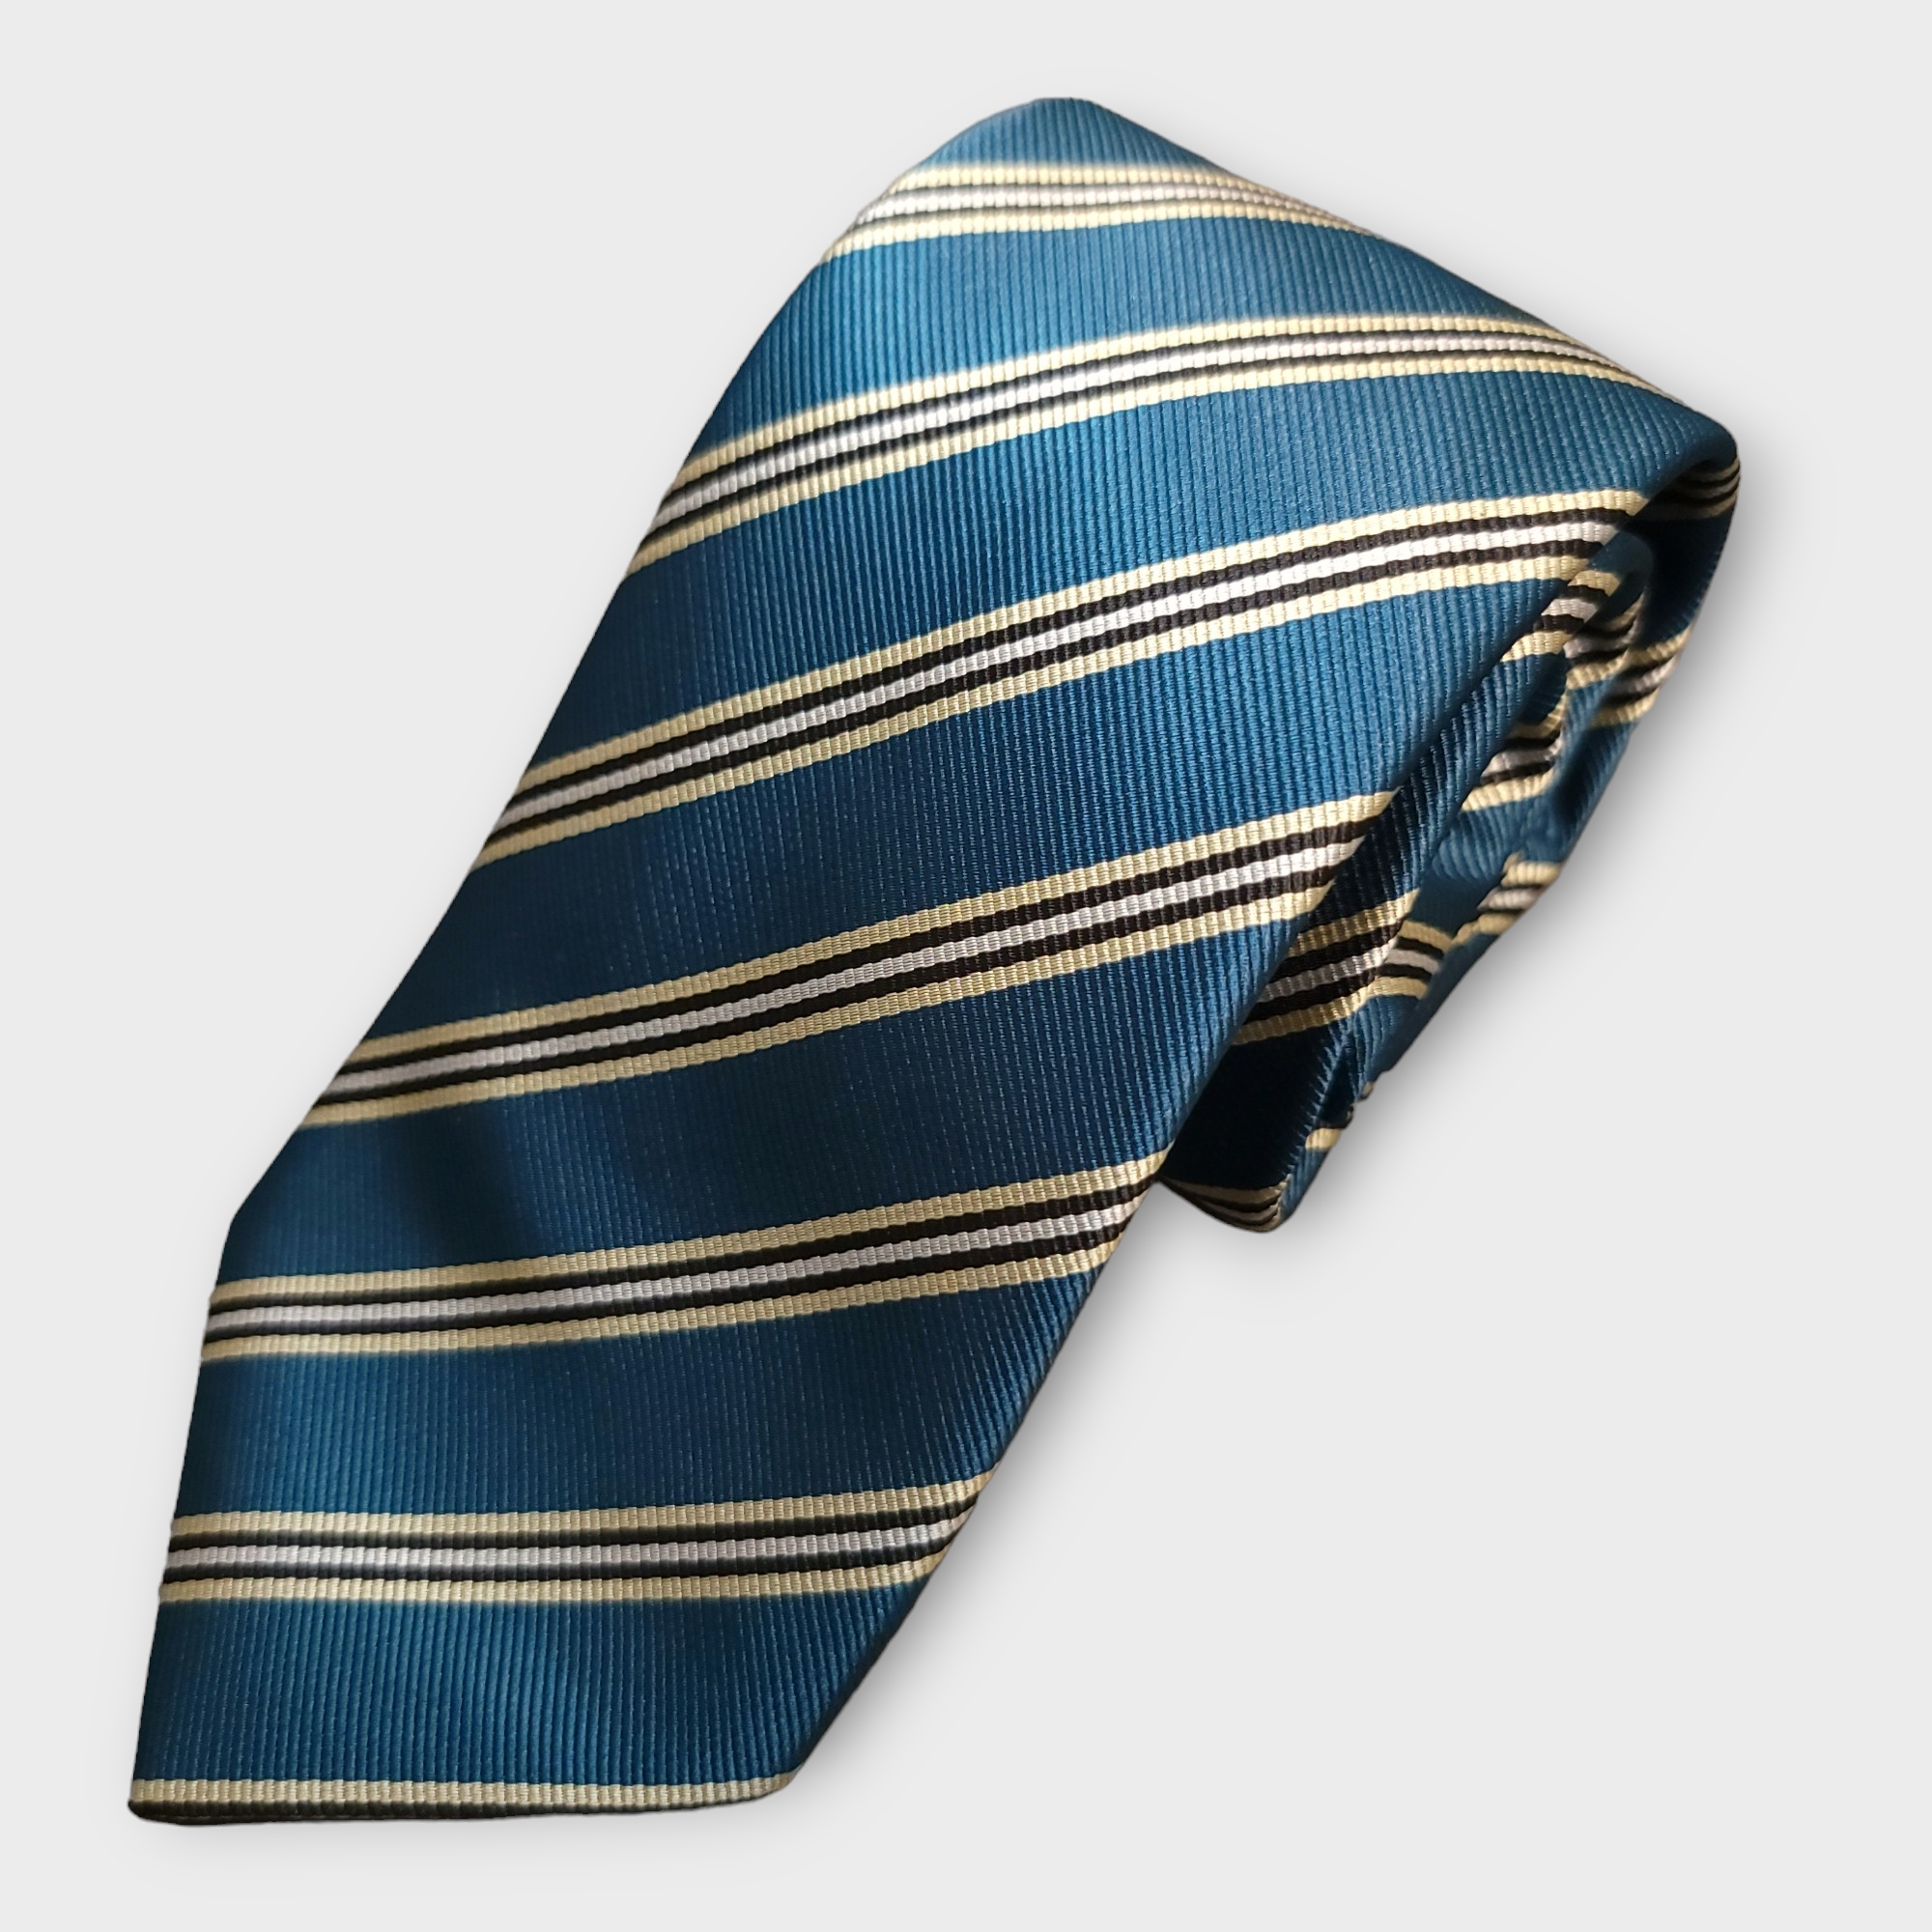 Dark Turquoise Striped Silk Tie Pocket Square Cufflink Set